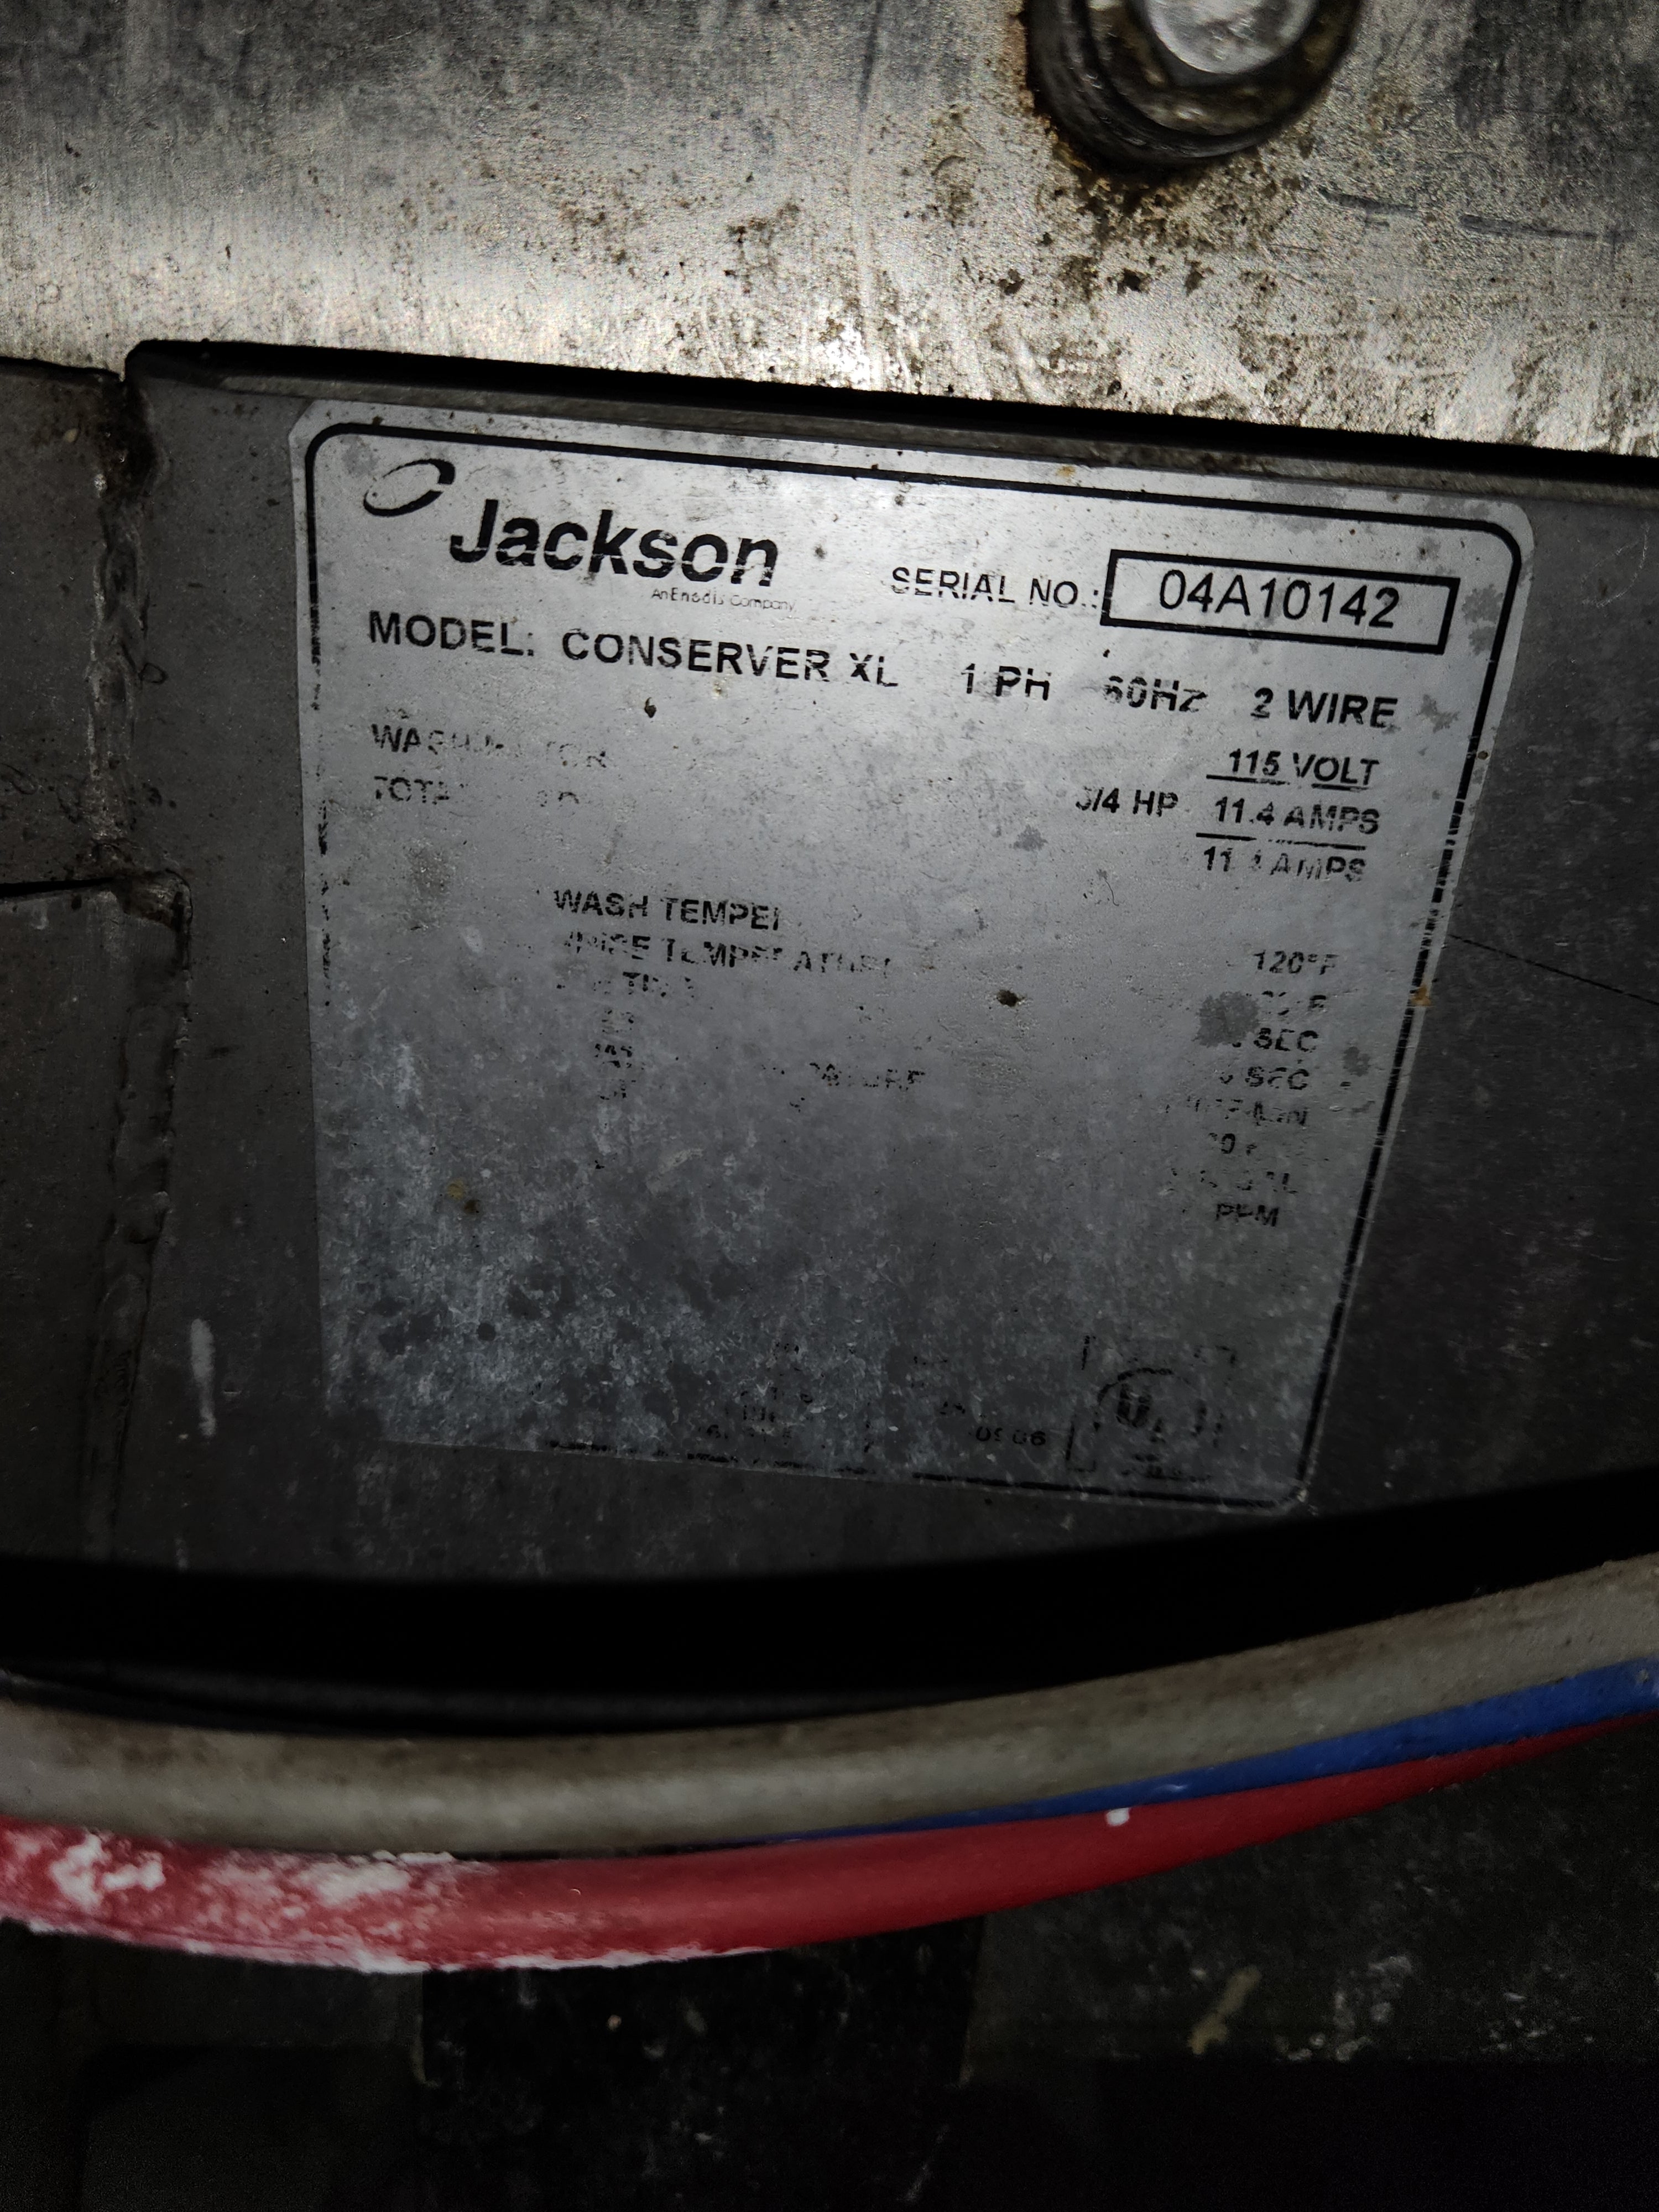 Commercial Dishwasher XL | Jackson| Model # AFC-ES | 115 Volt